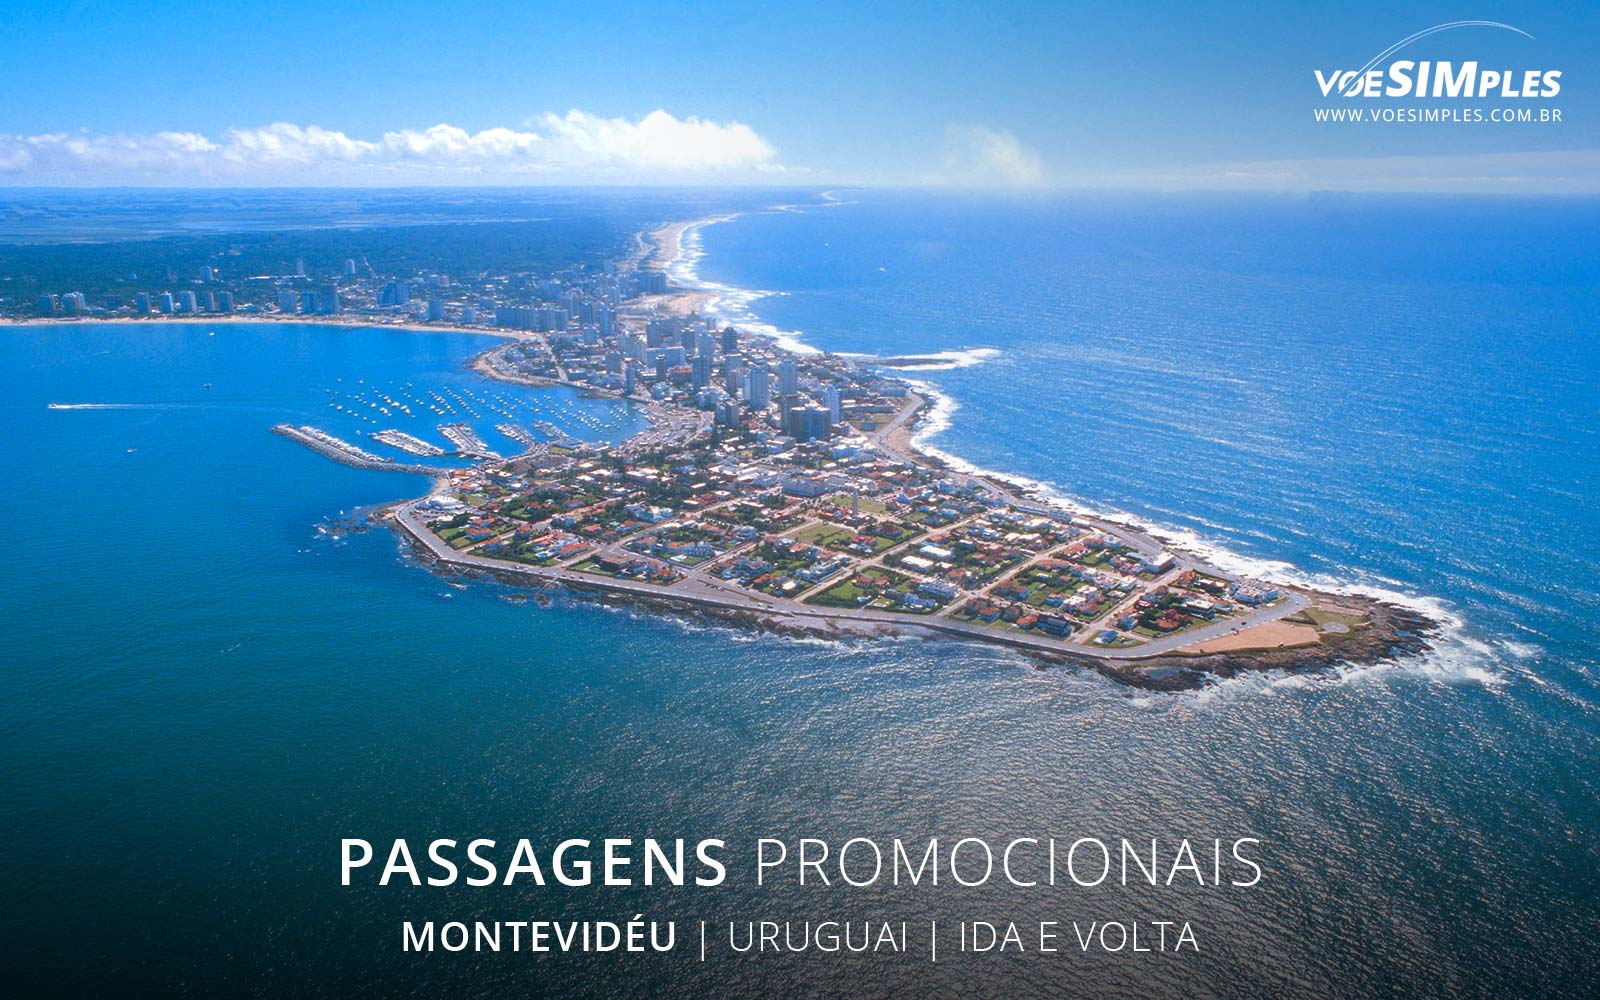 passagens-aereas-baratas-montevideo-uruguai-america-sul-voe-simples-passages-aereas-promocionais-uruguai-passagens-promo-montevideo